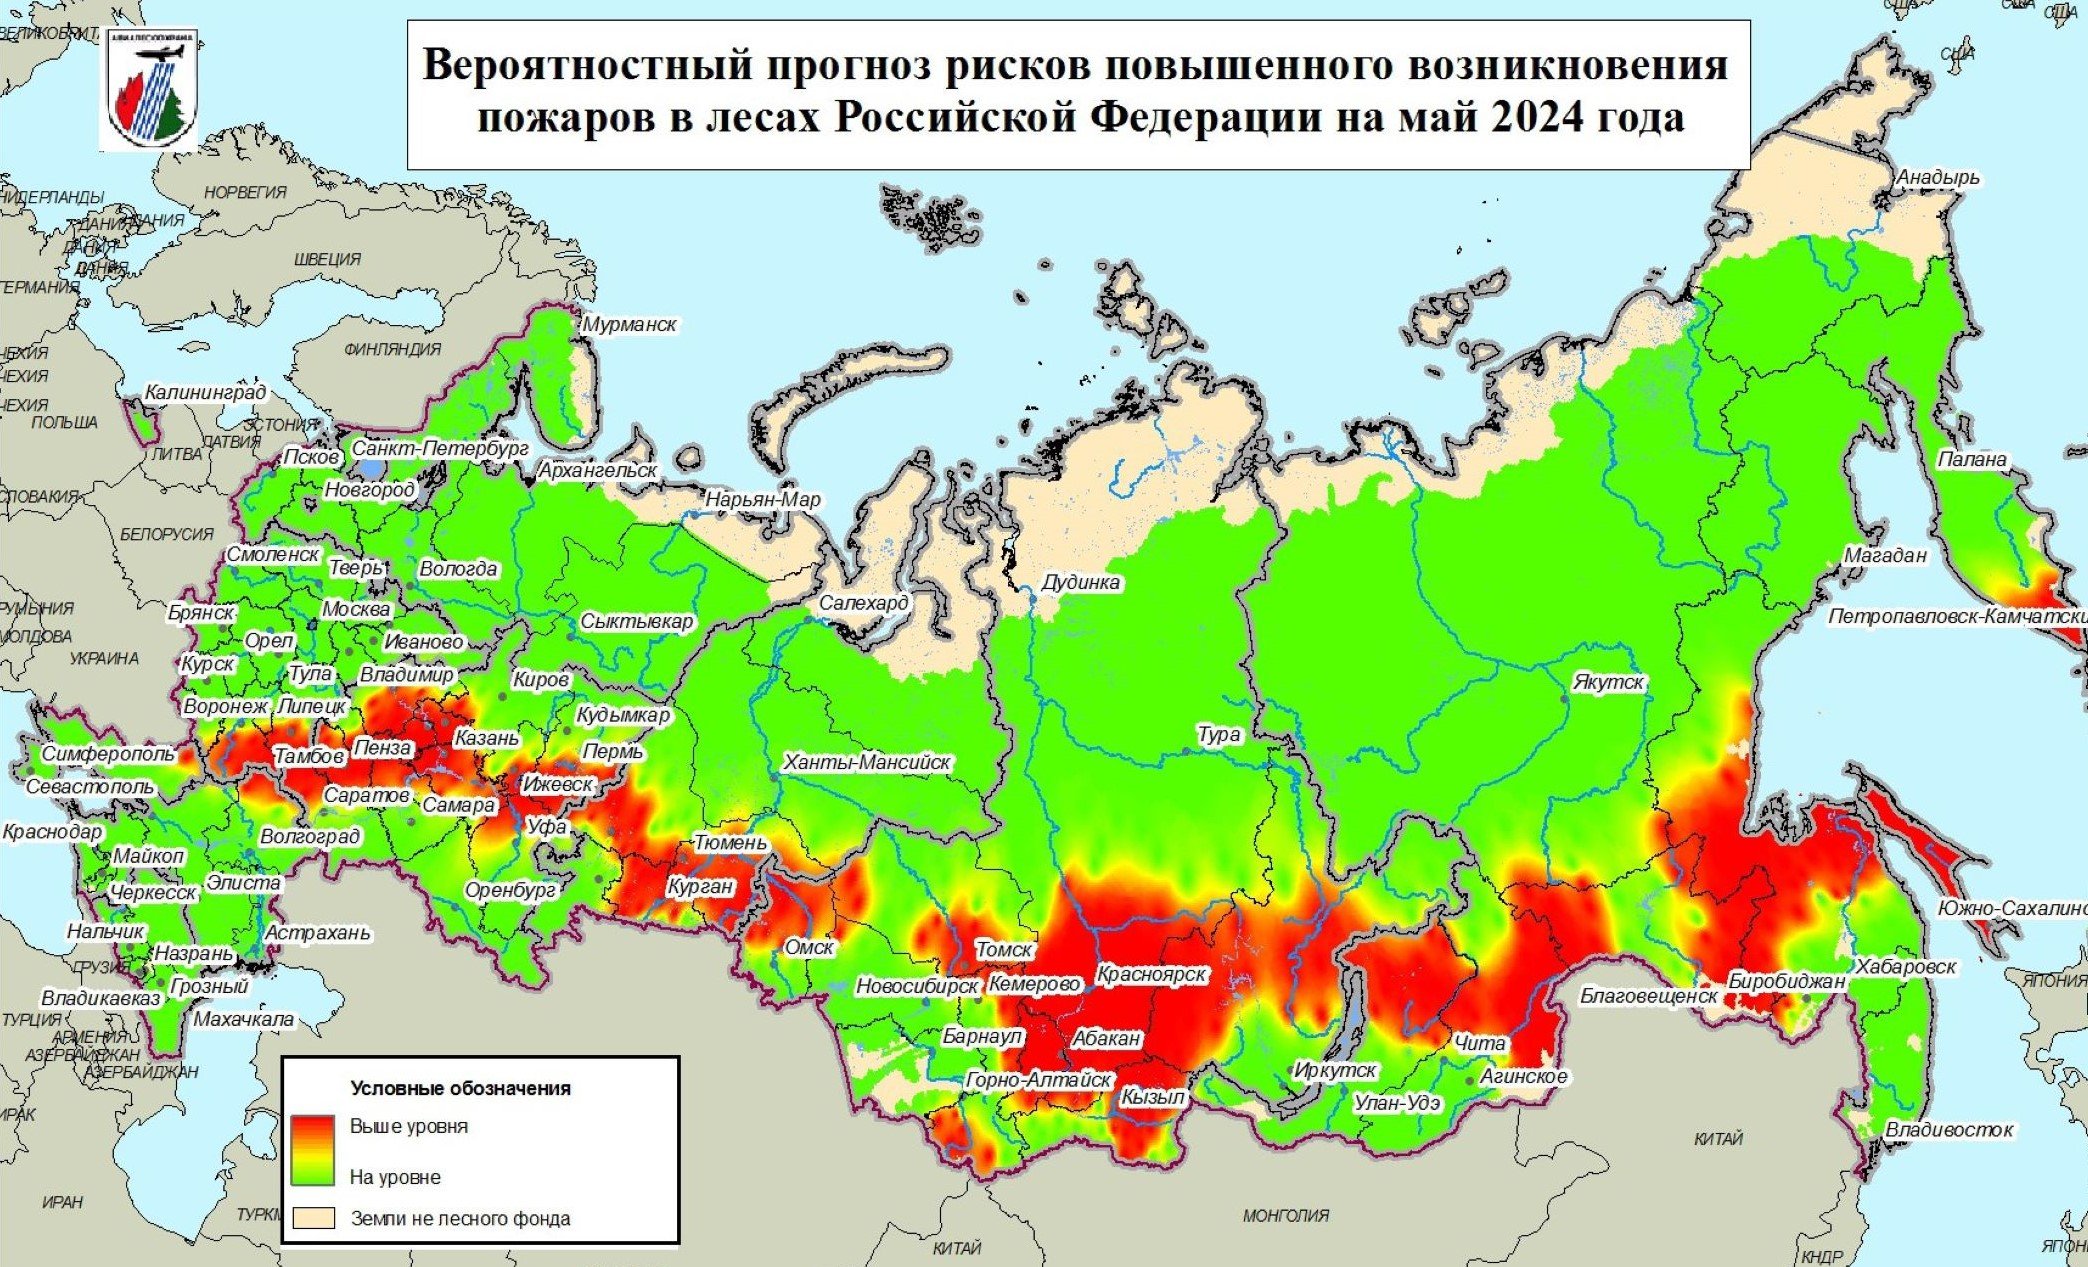 Авиалесоохрана: в мае в 32 регионах России возможны риски ЧС по лесным пожарам